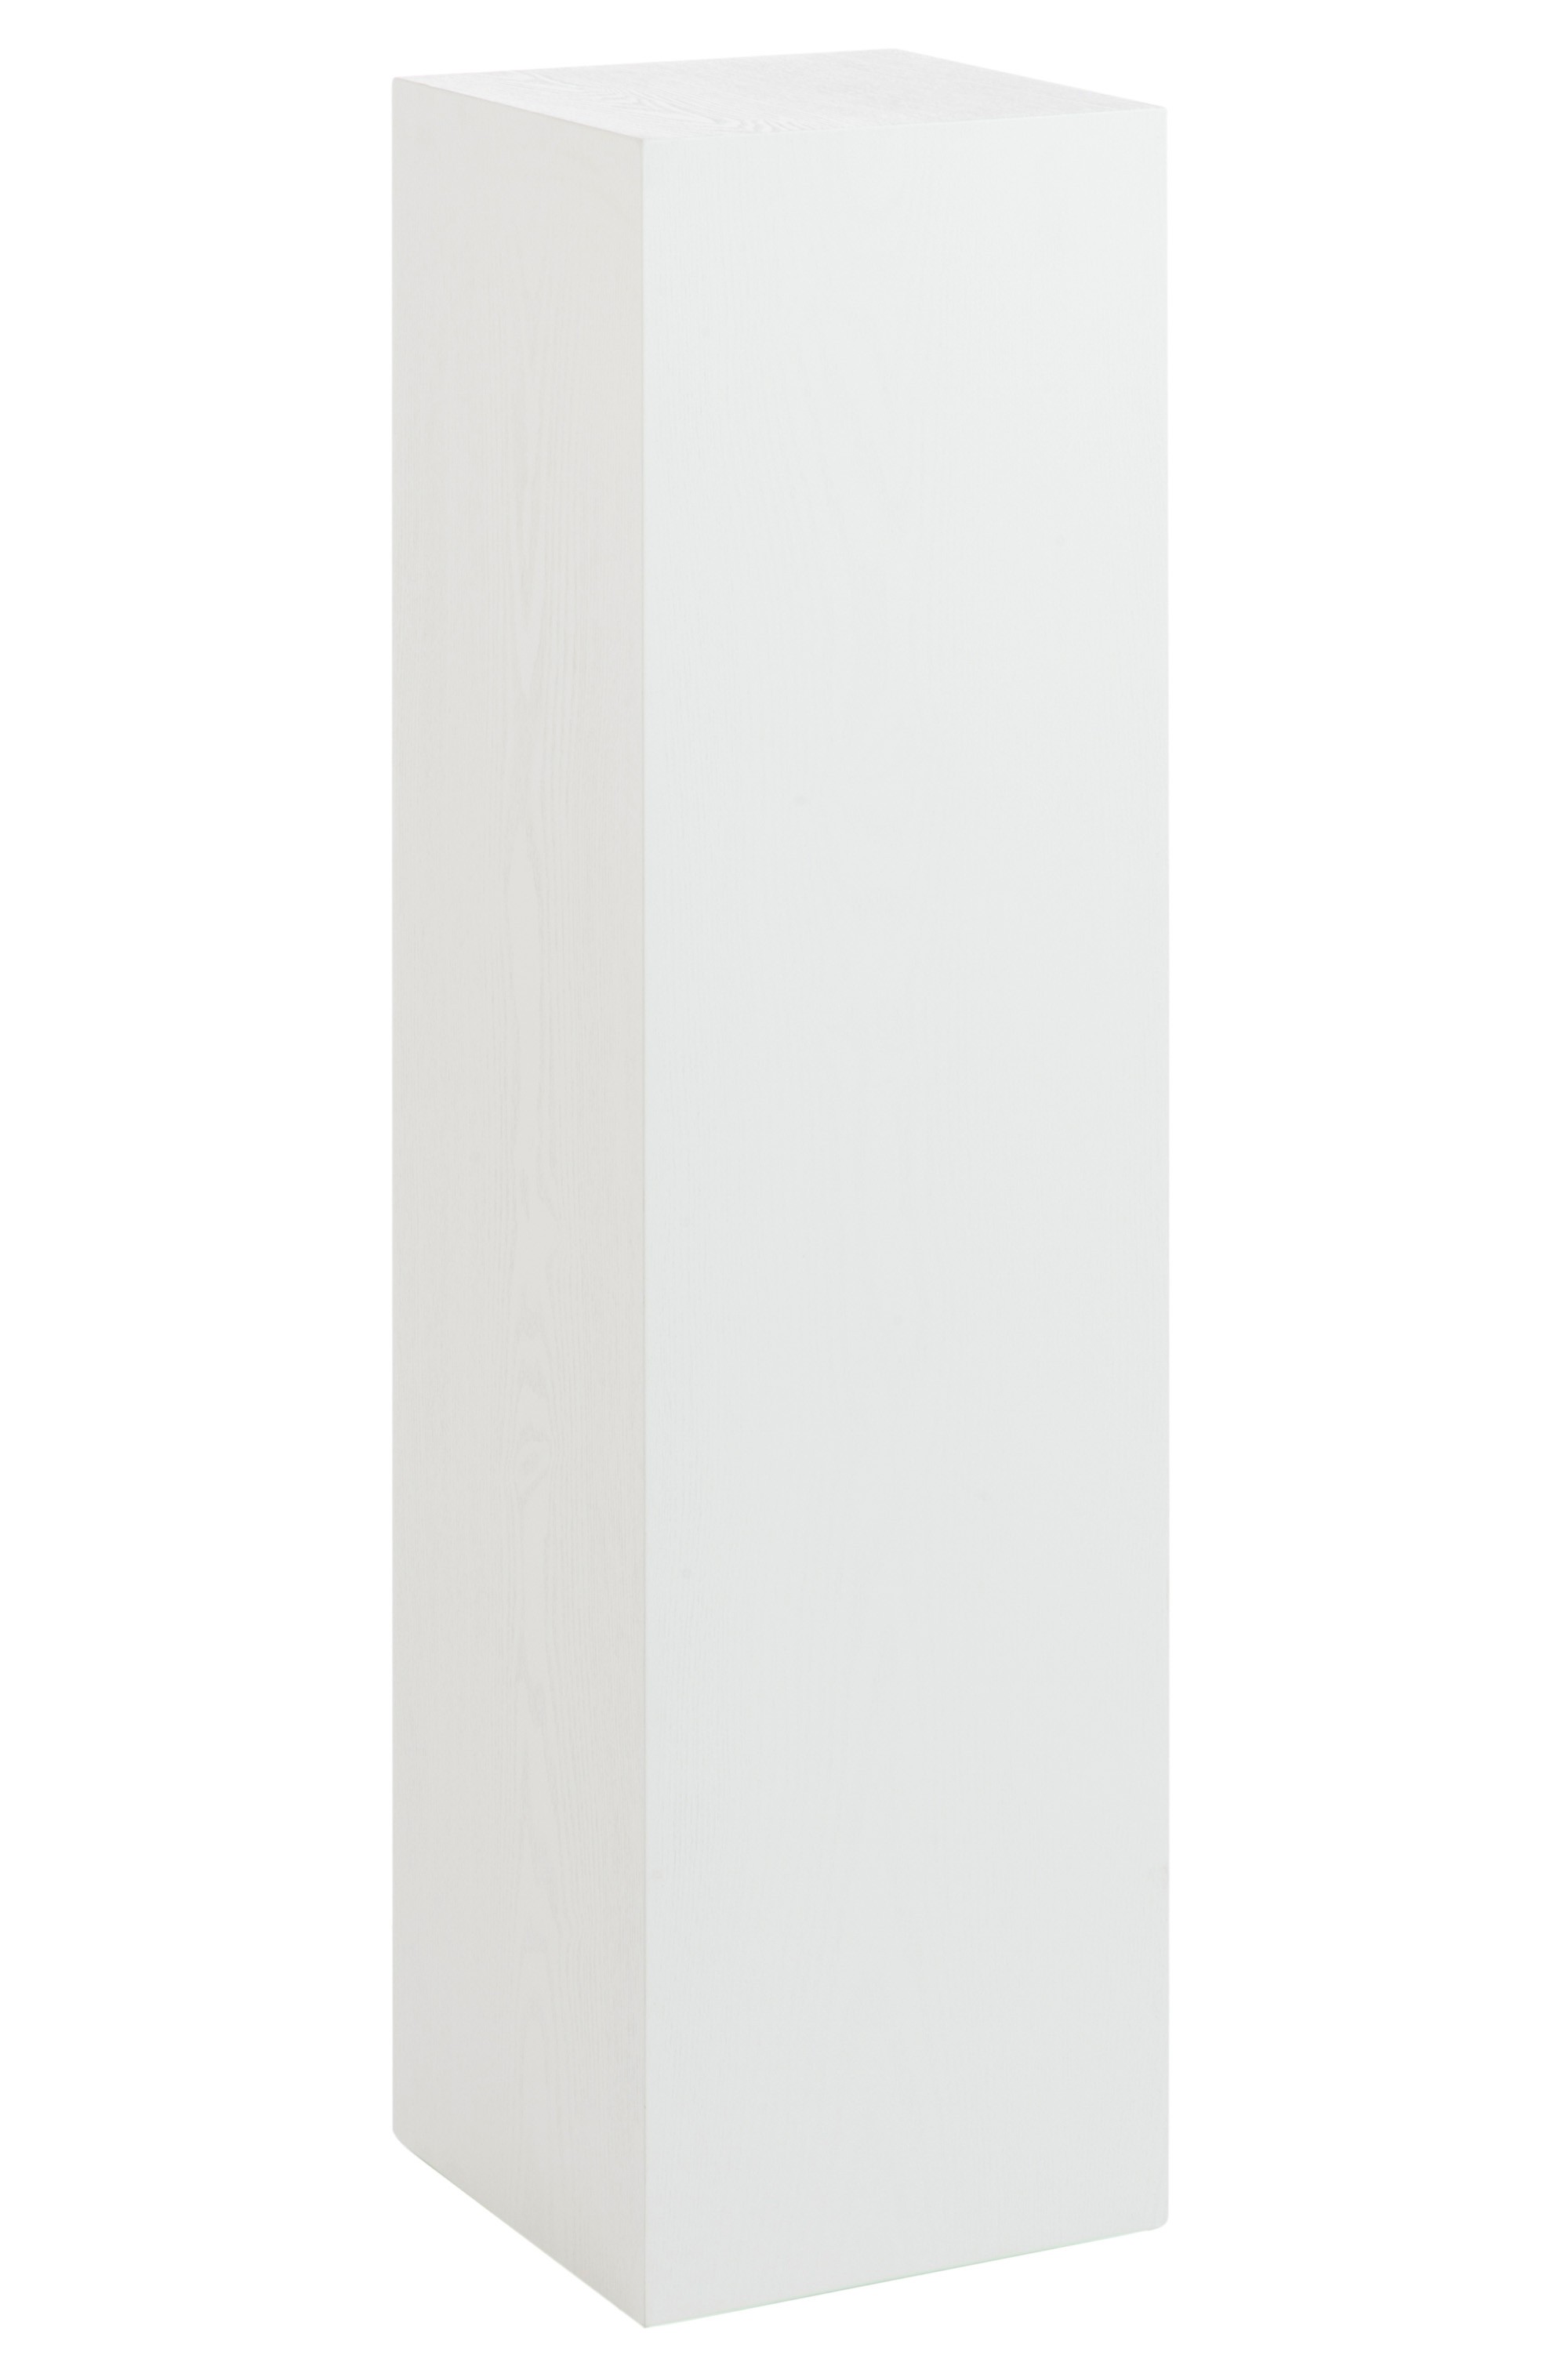 Bílý dřevěný dekorativní podstavec M - 30*30*110 cm 71821